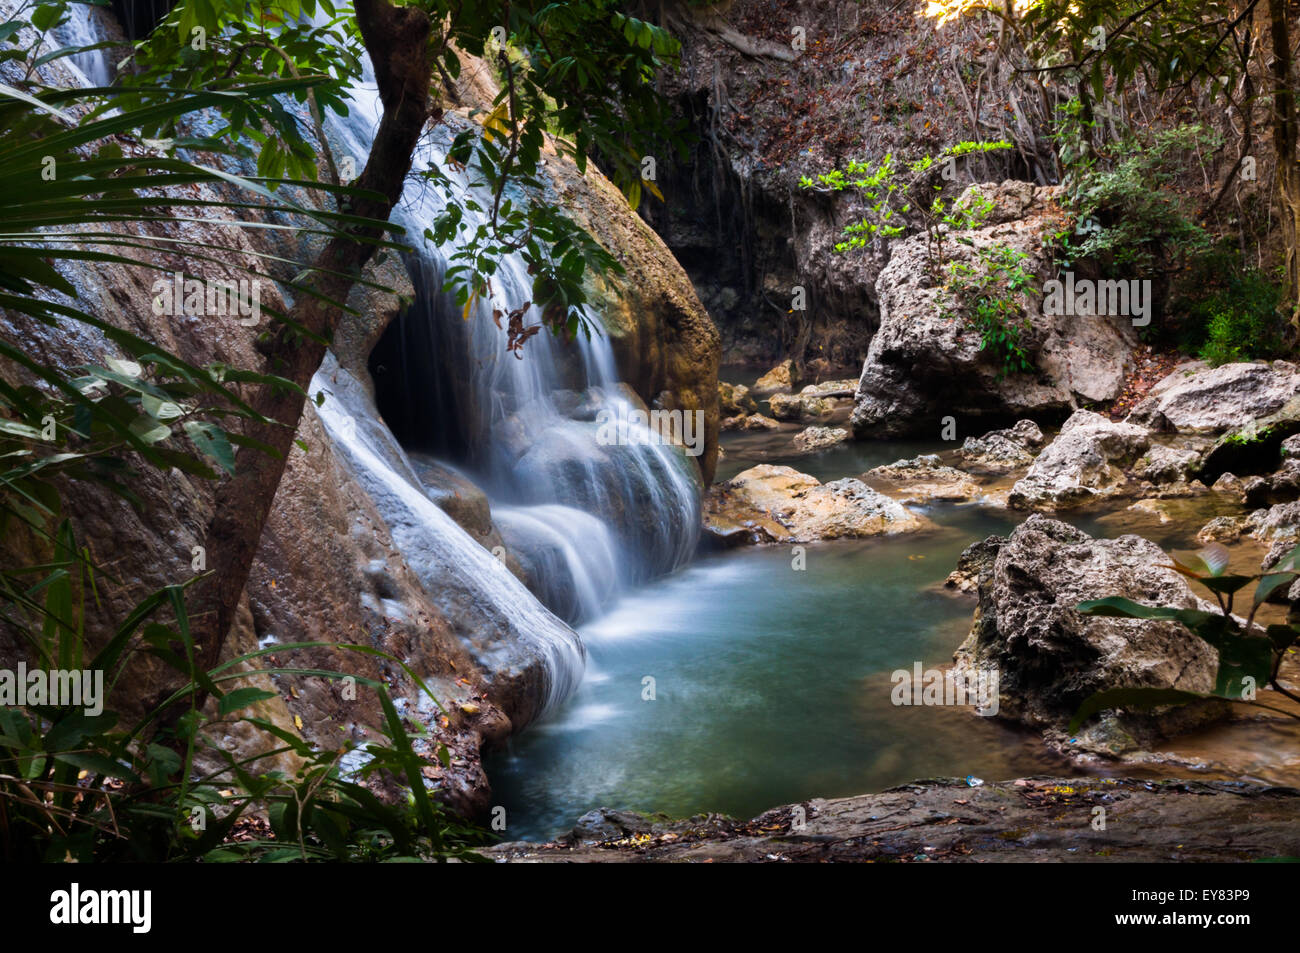 Waterfall in Oenesu near Kupang, East Nusa Tenggara, Indonesia. Stock Photo